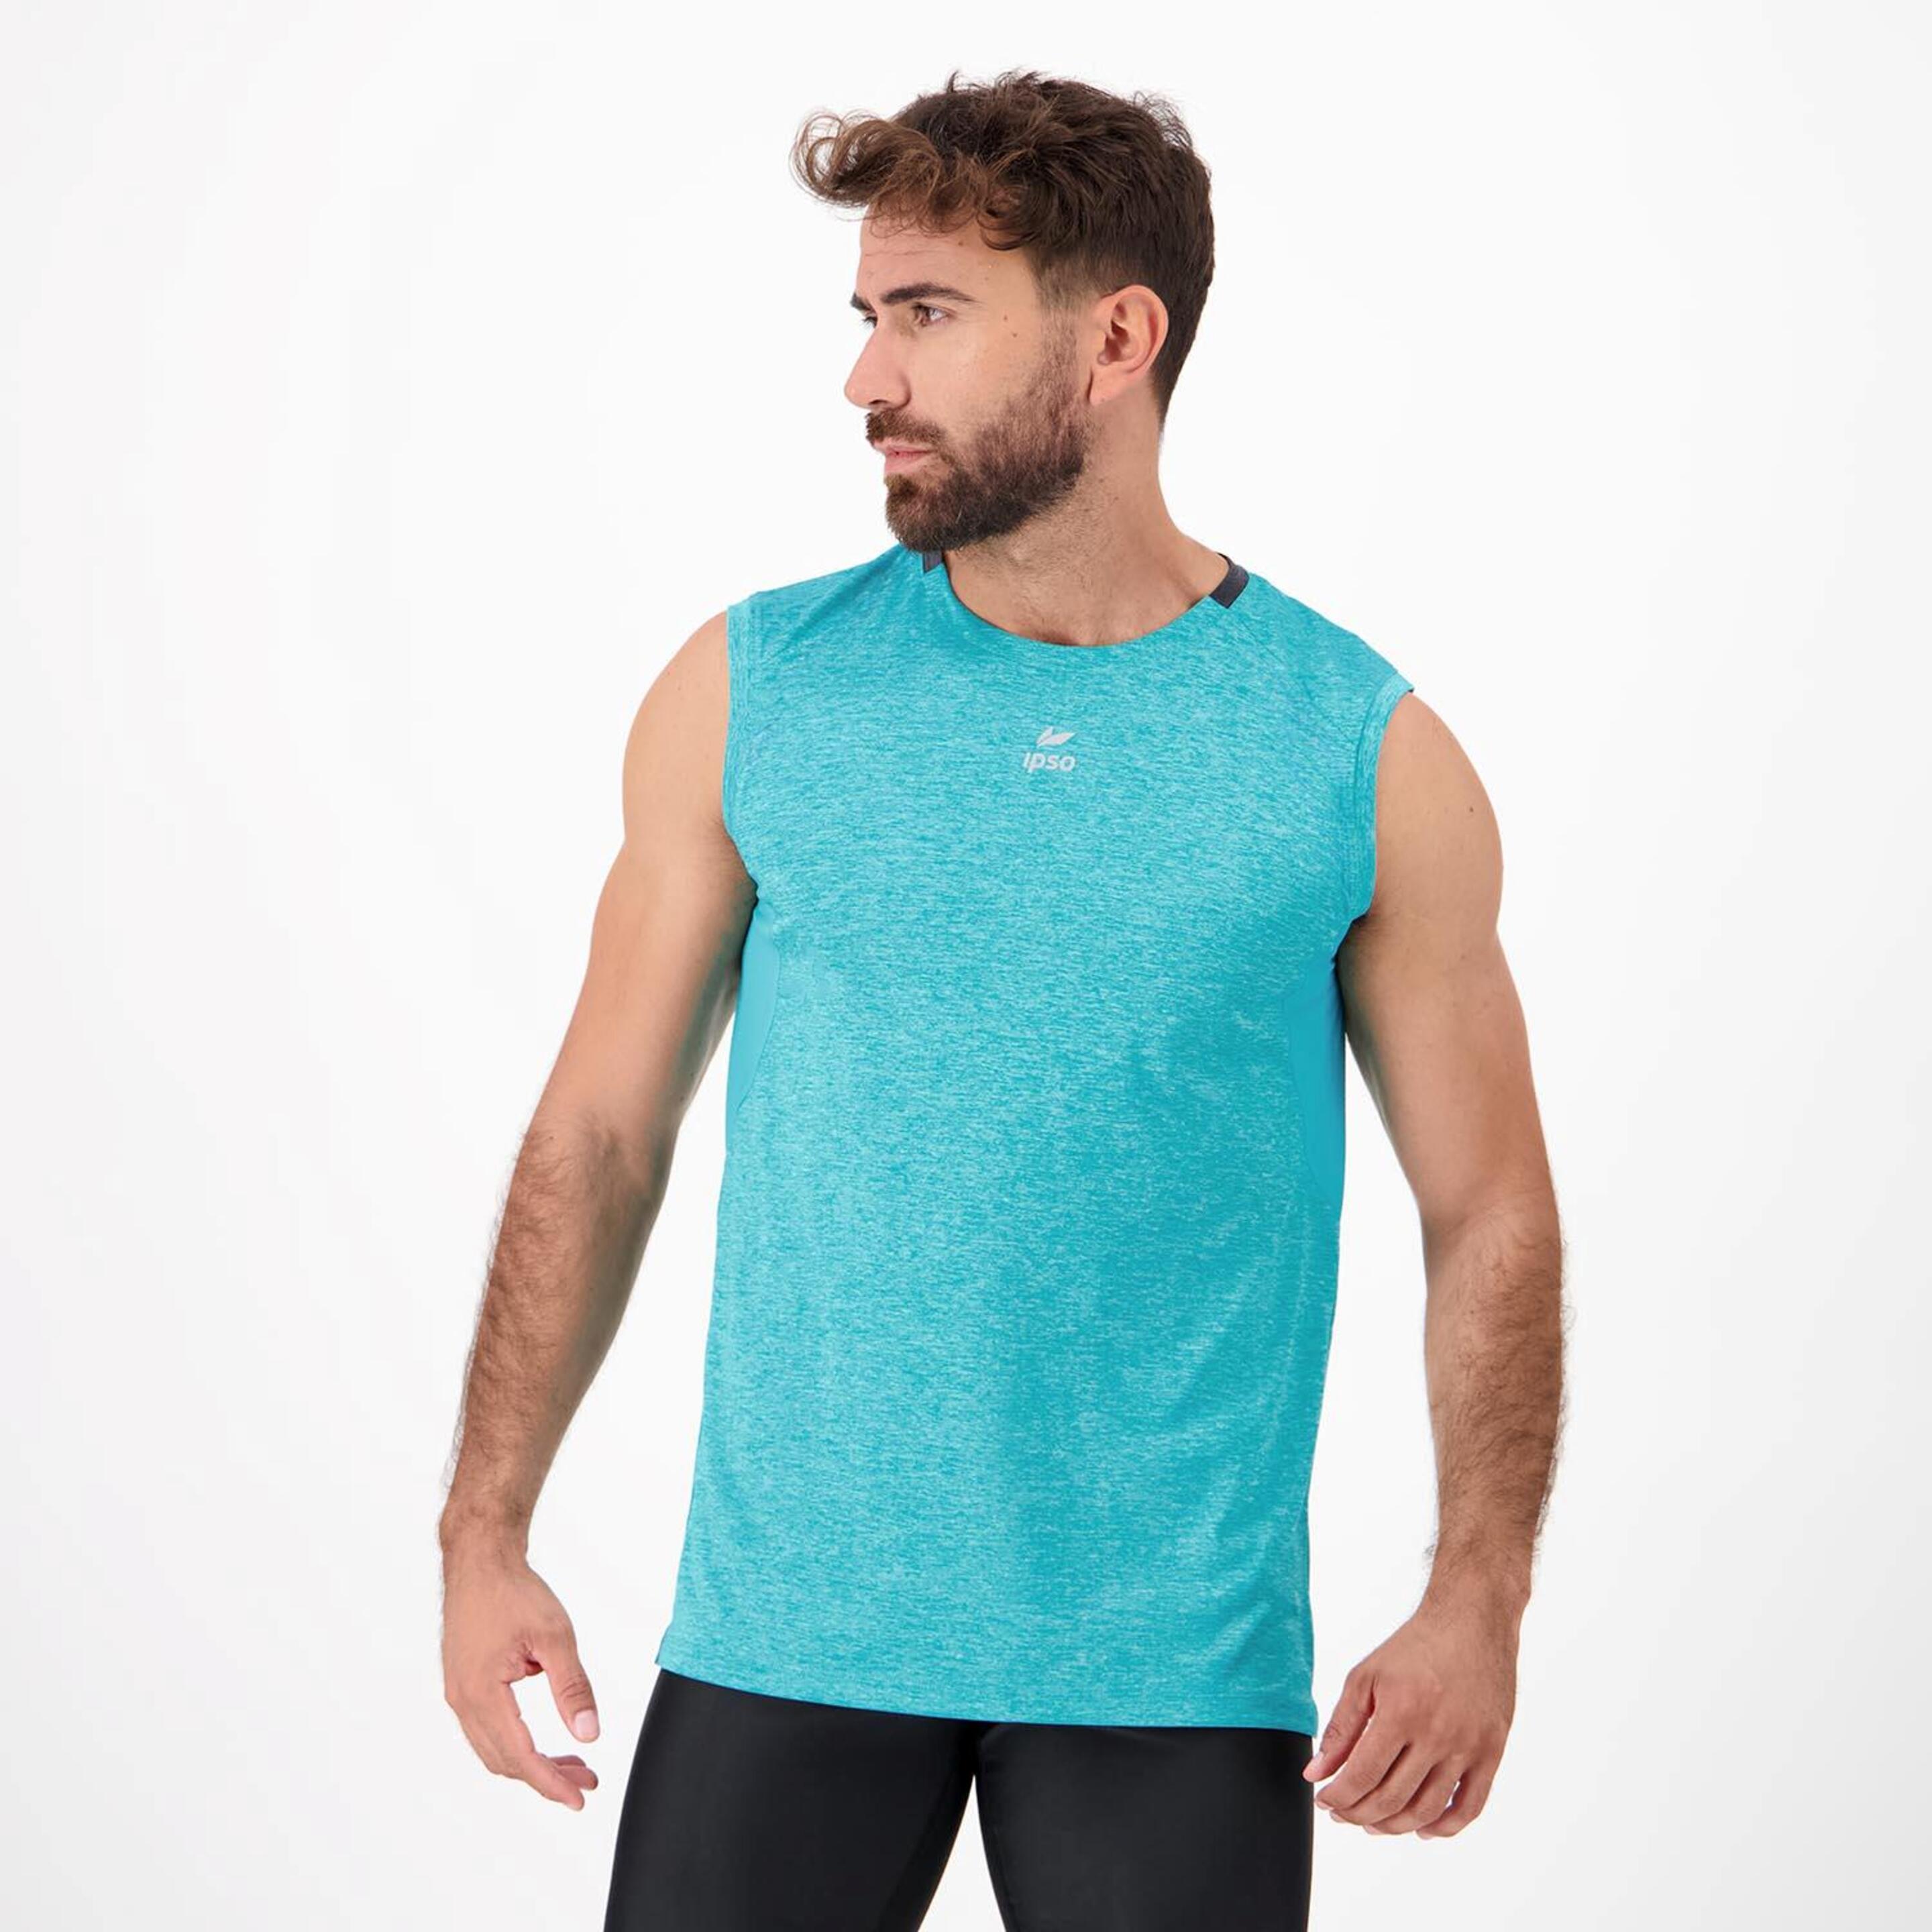 Ipso Combi 2  - Turquesa - Camiseta Running Hombre